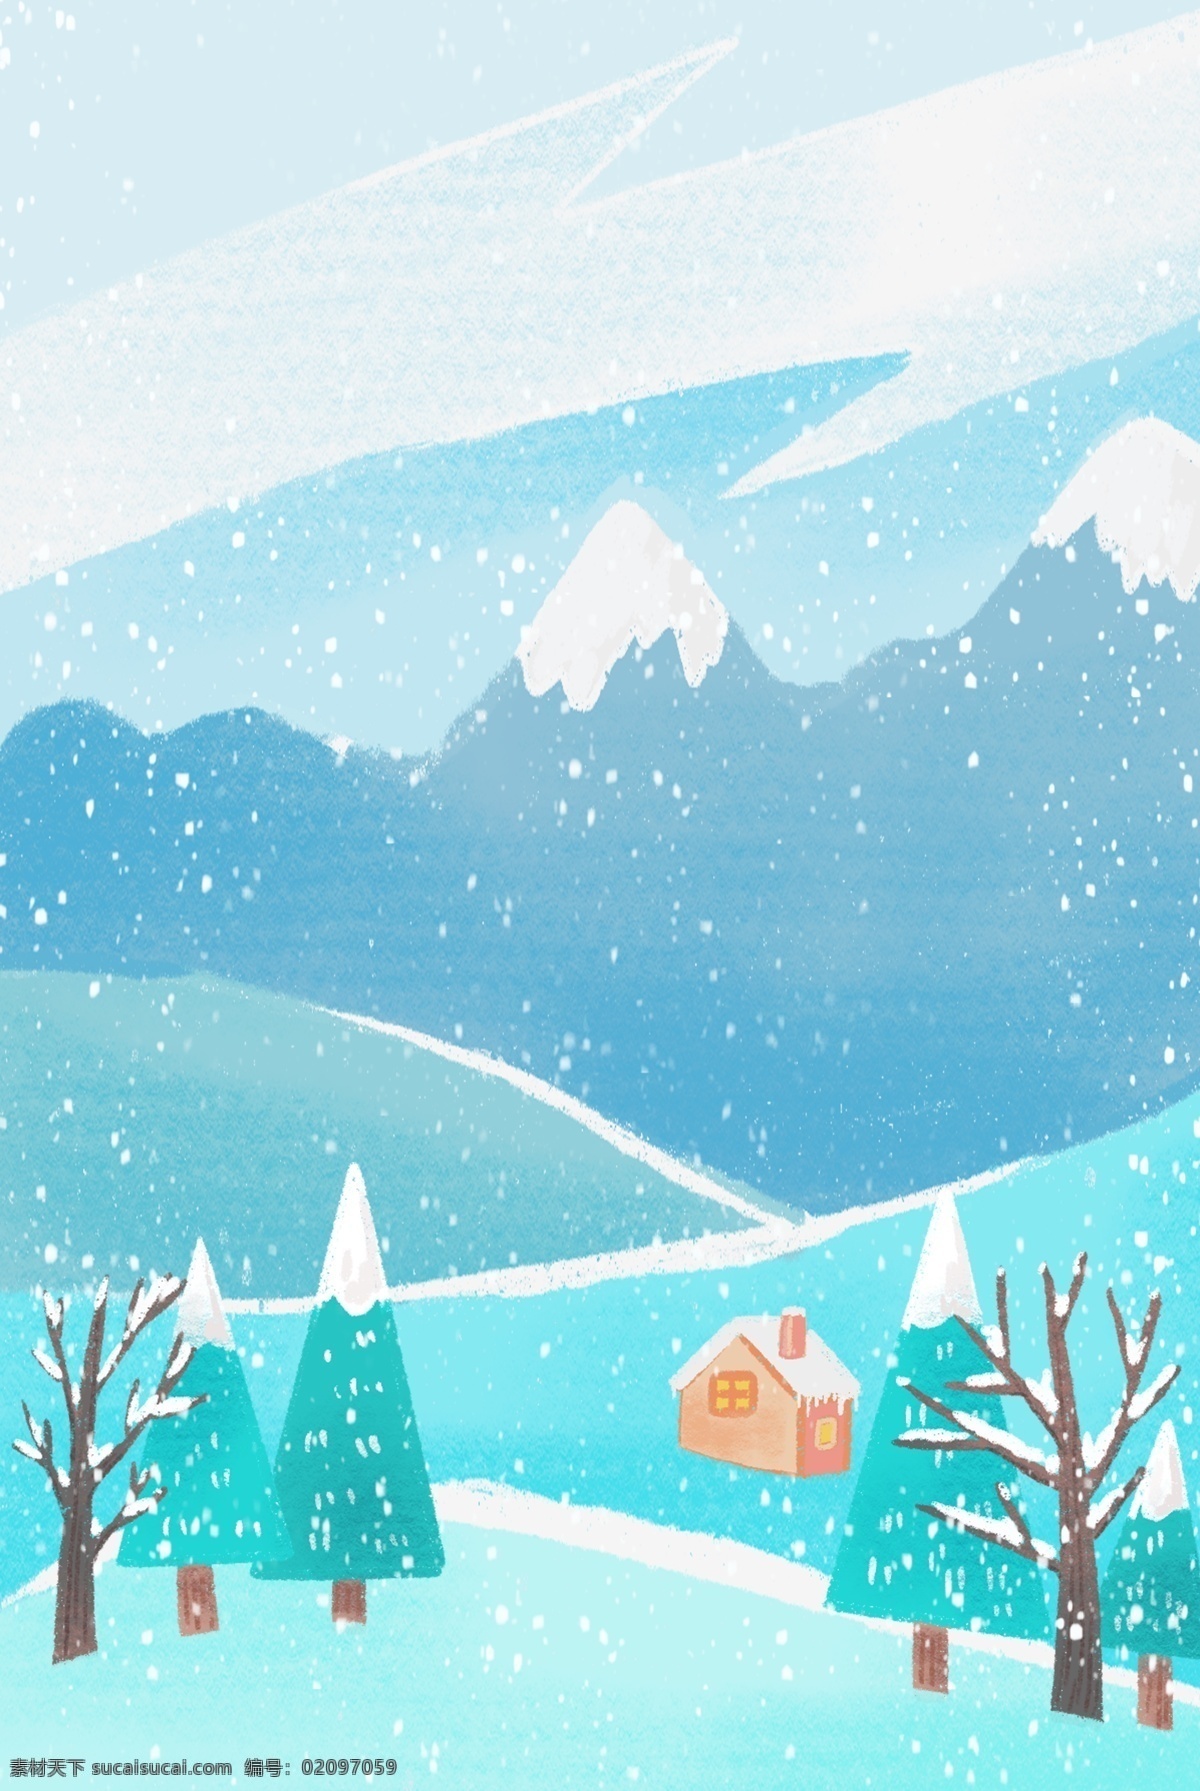 二十四节气 大寒 主题 手绘 插画 背景 大雪 雪景 冬季 房屋 松树 远山